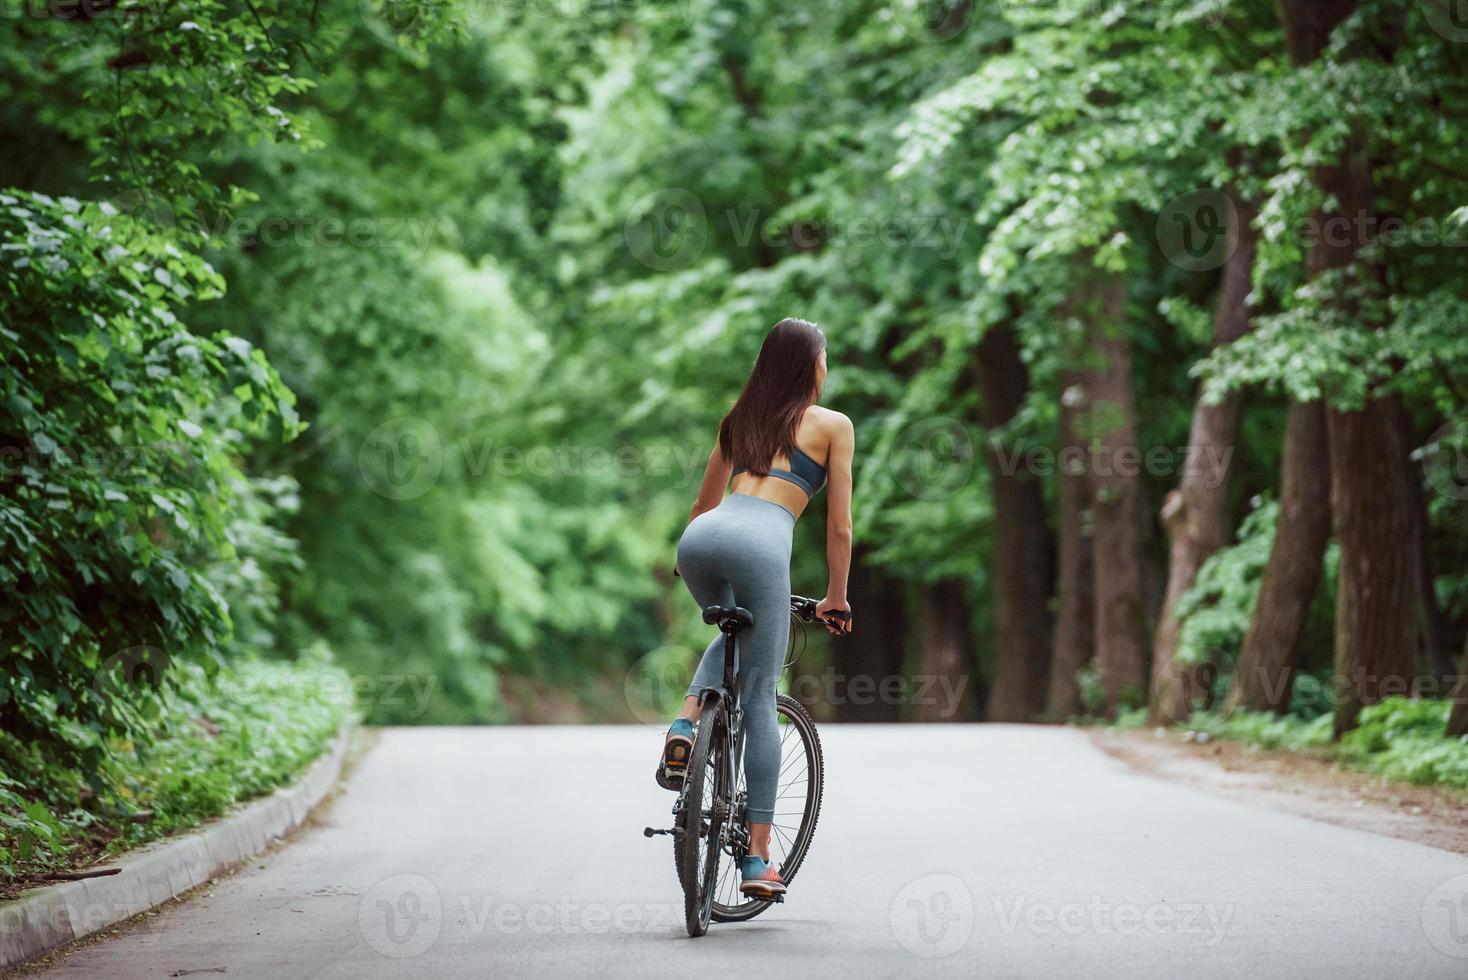 herrliche Wälder. Radfahrerin auf einem Fahrrad auf asphaltierter Straße im Wald tagsüber foto